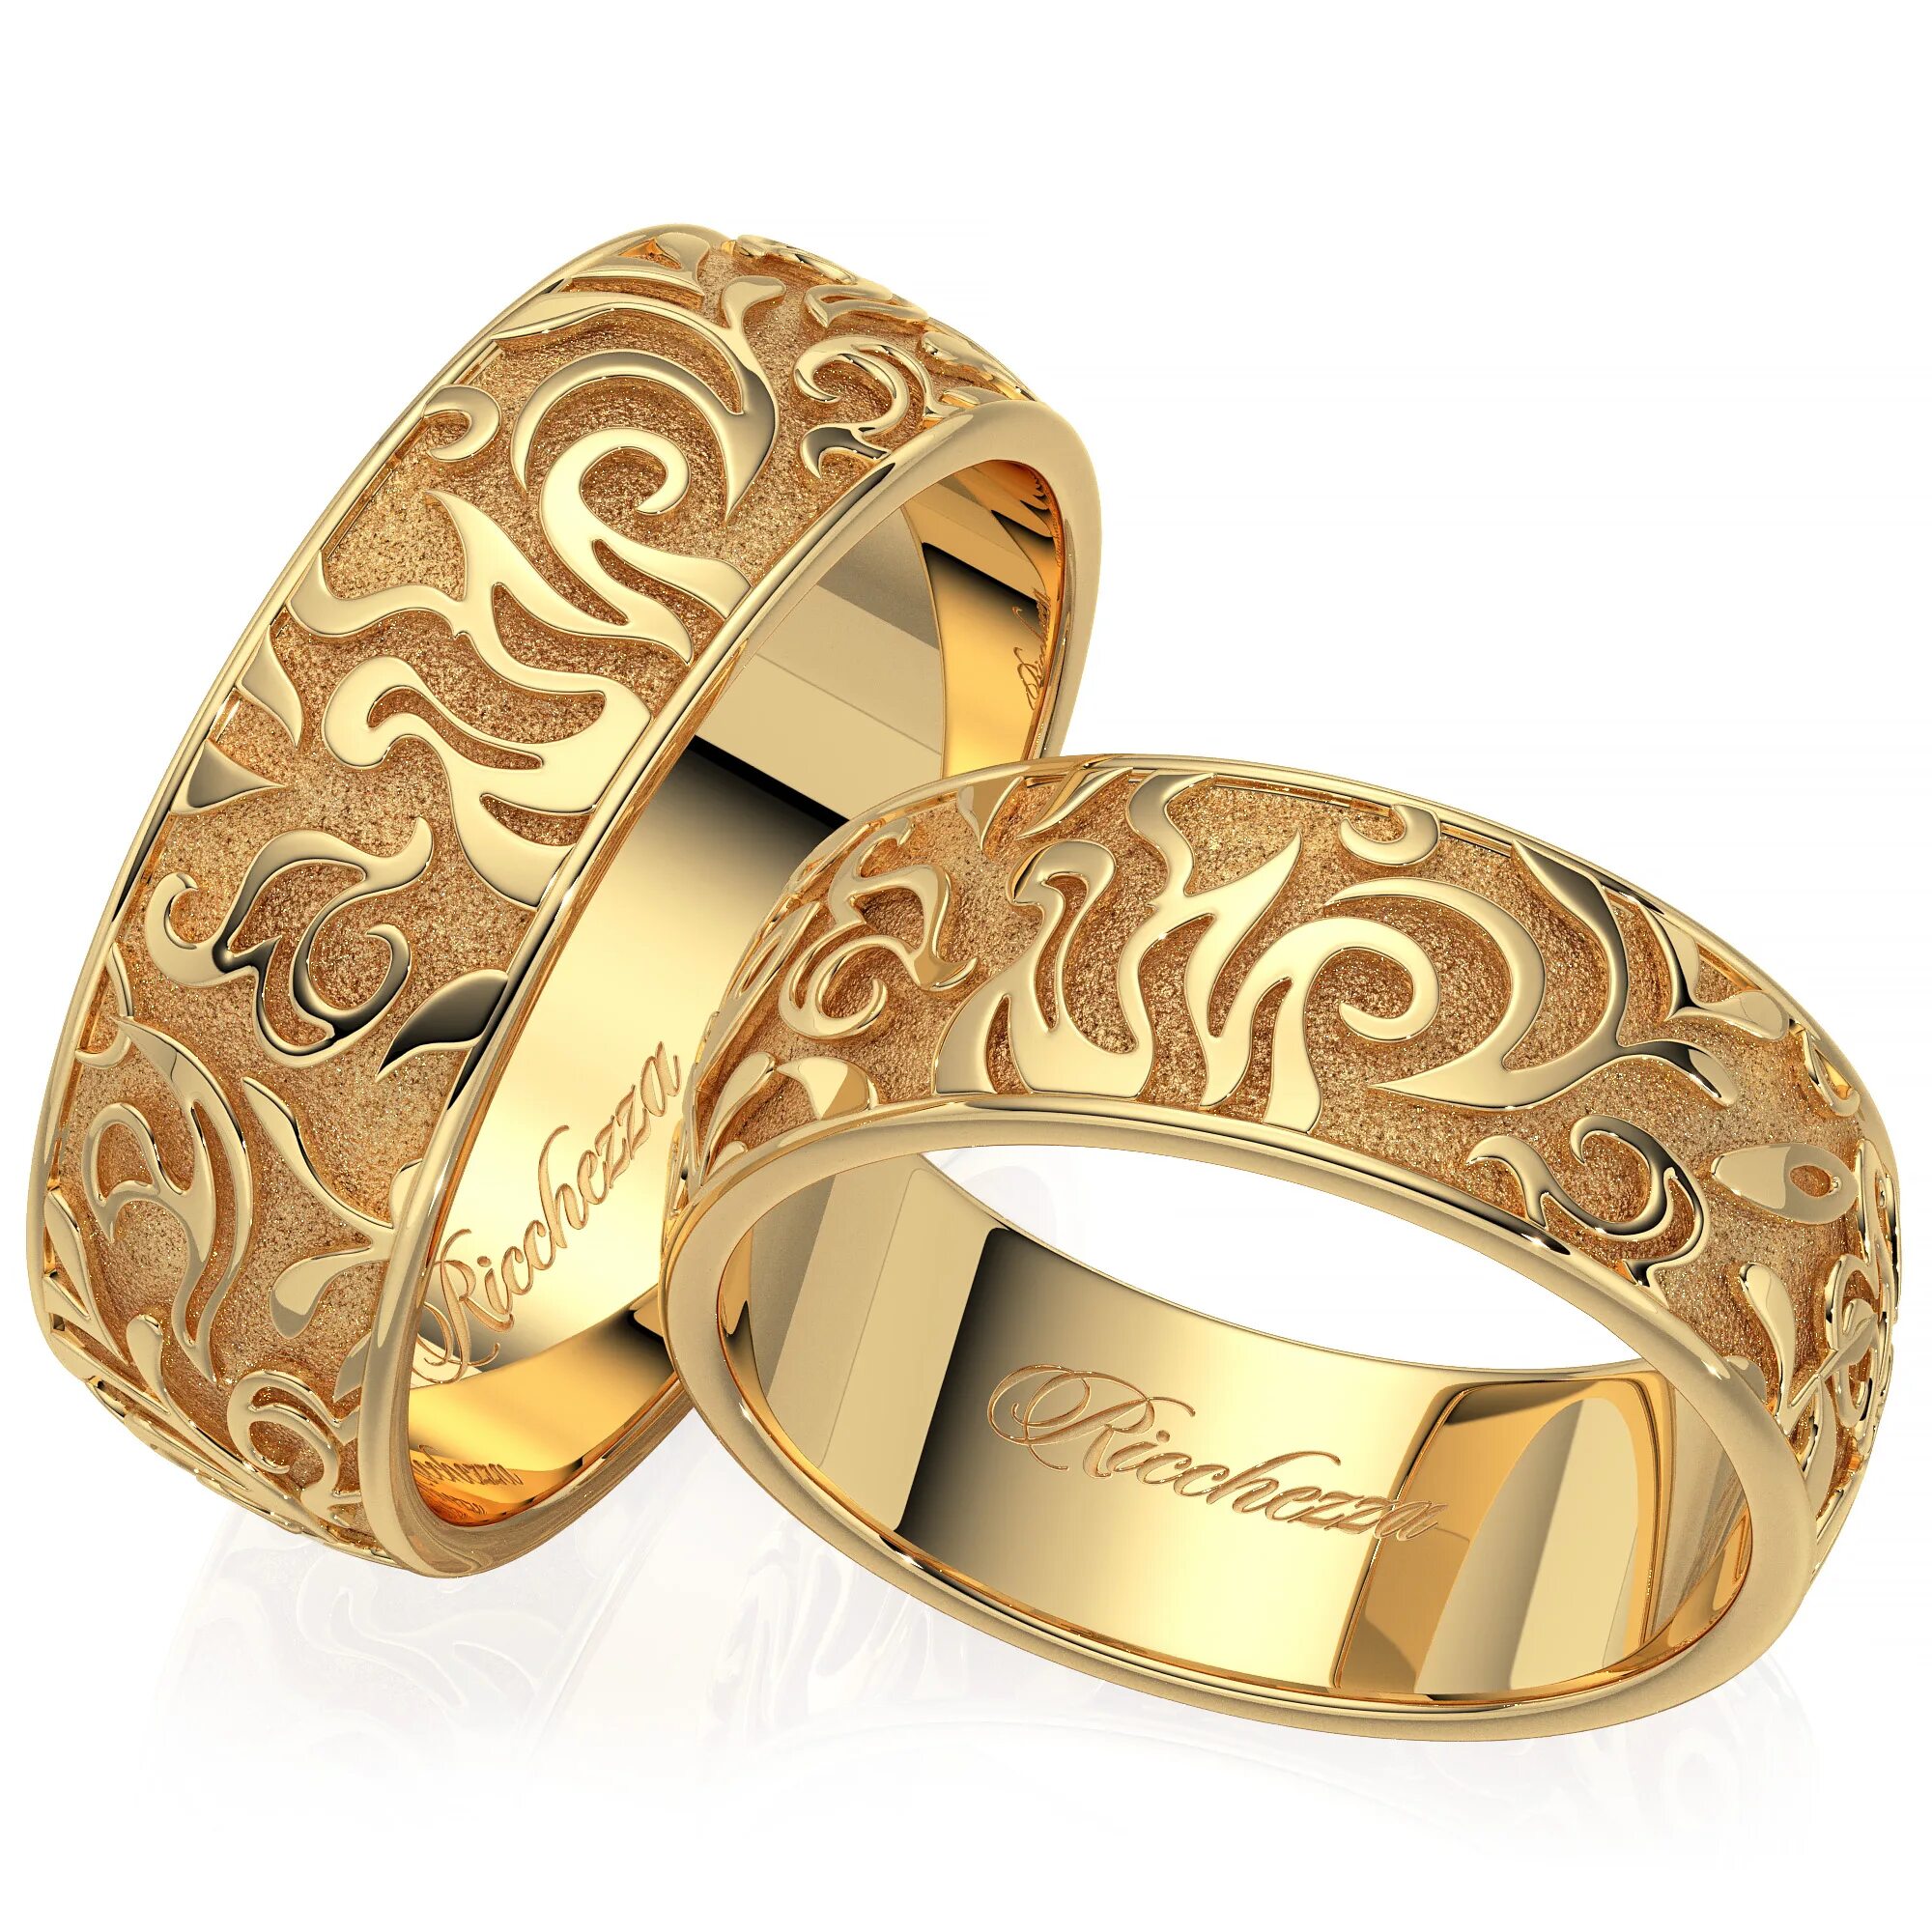 Золотое кольцо примеры. Венчальные кольца 585. Кольцо золотое кольцо обручалка. Кольцо широкое золотое обручальное 585. 585 Золотой обручальные кольца.